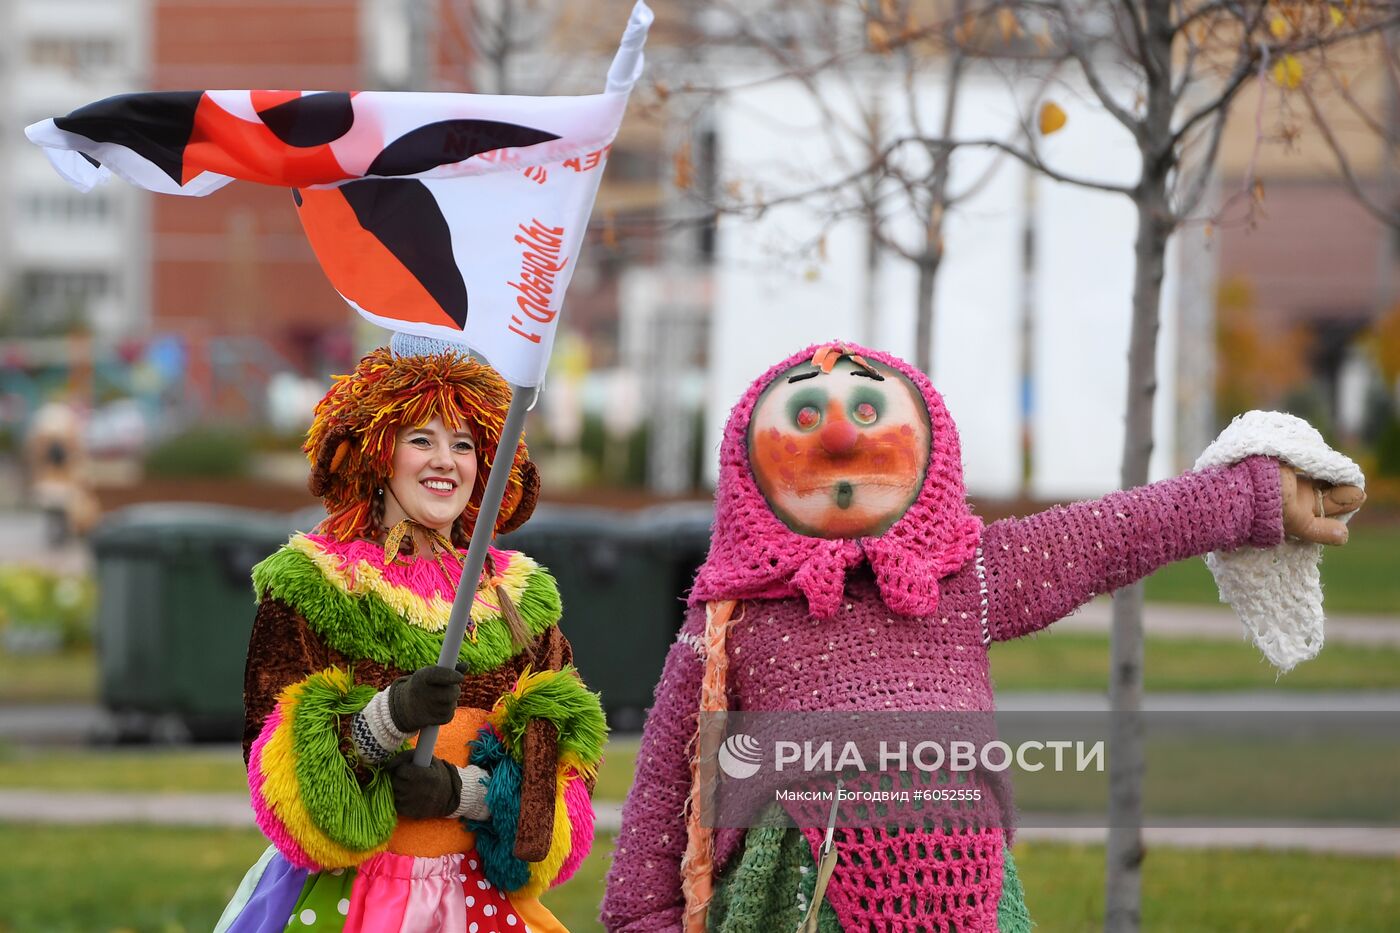 III Международный фестиваль театров кукол "Шомбай fest" в Казани